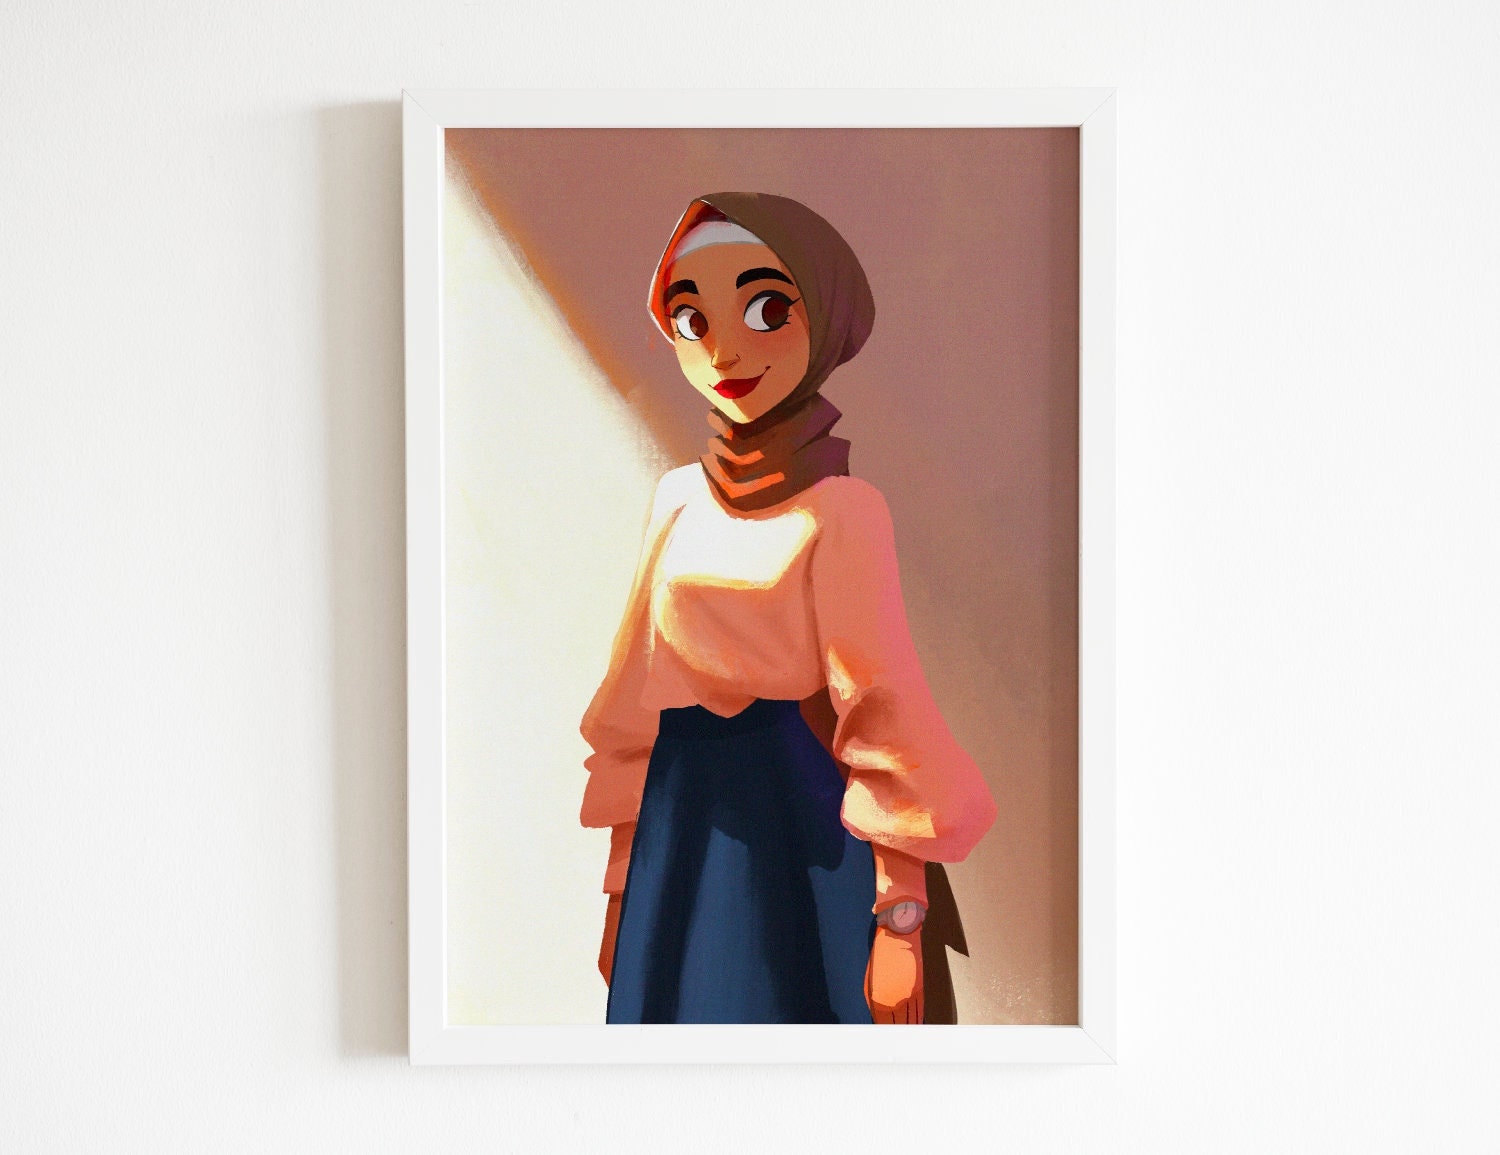 100+] Anime Hijab Wallpapers